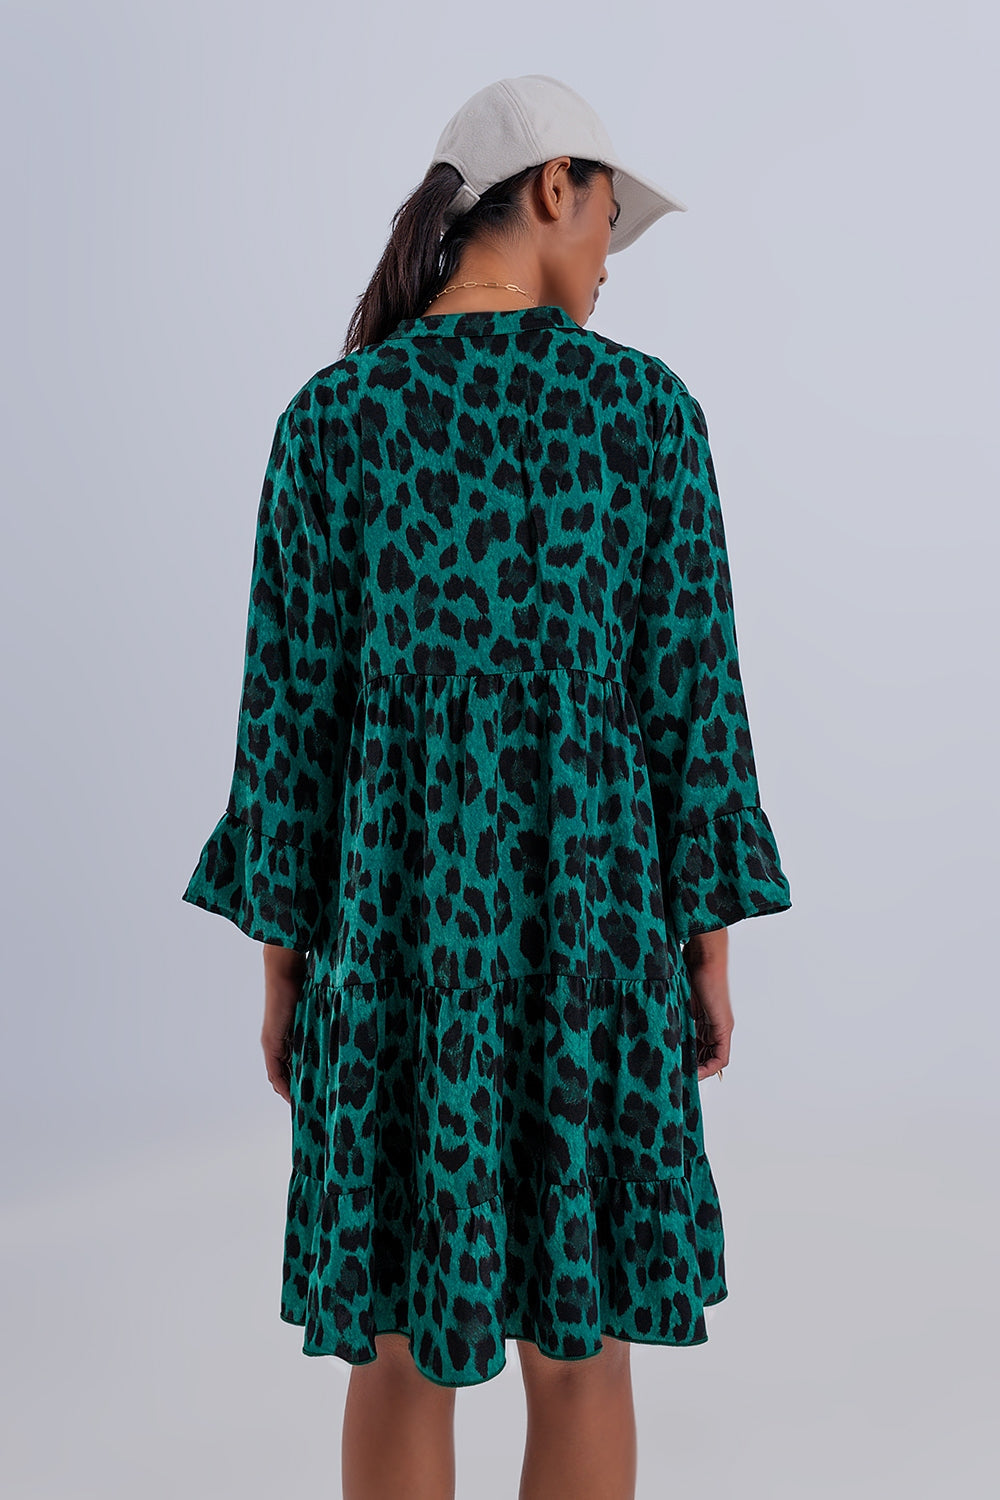 Tiered Smock Mini Dress in Green Animal Print